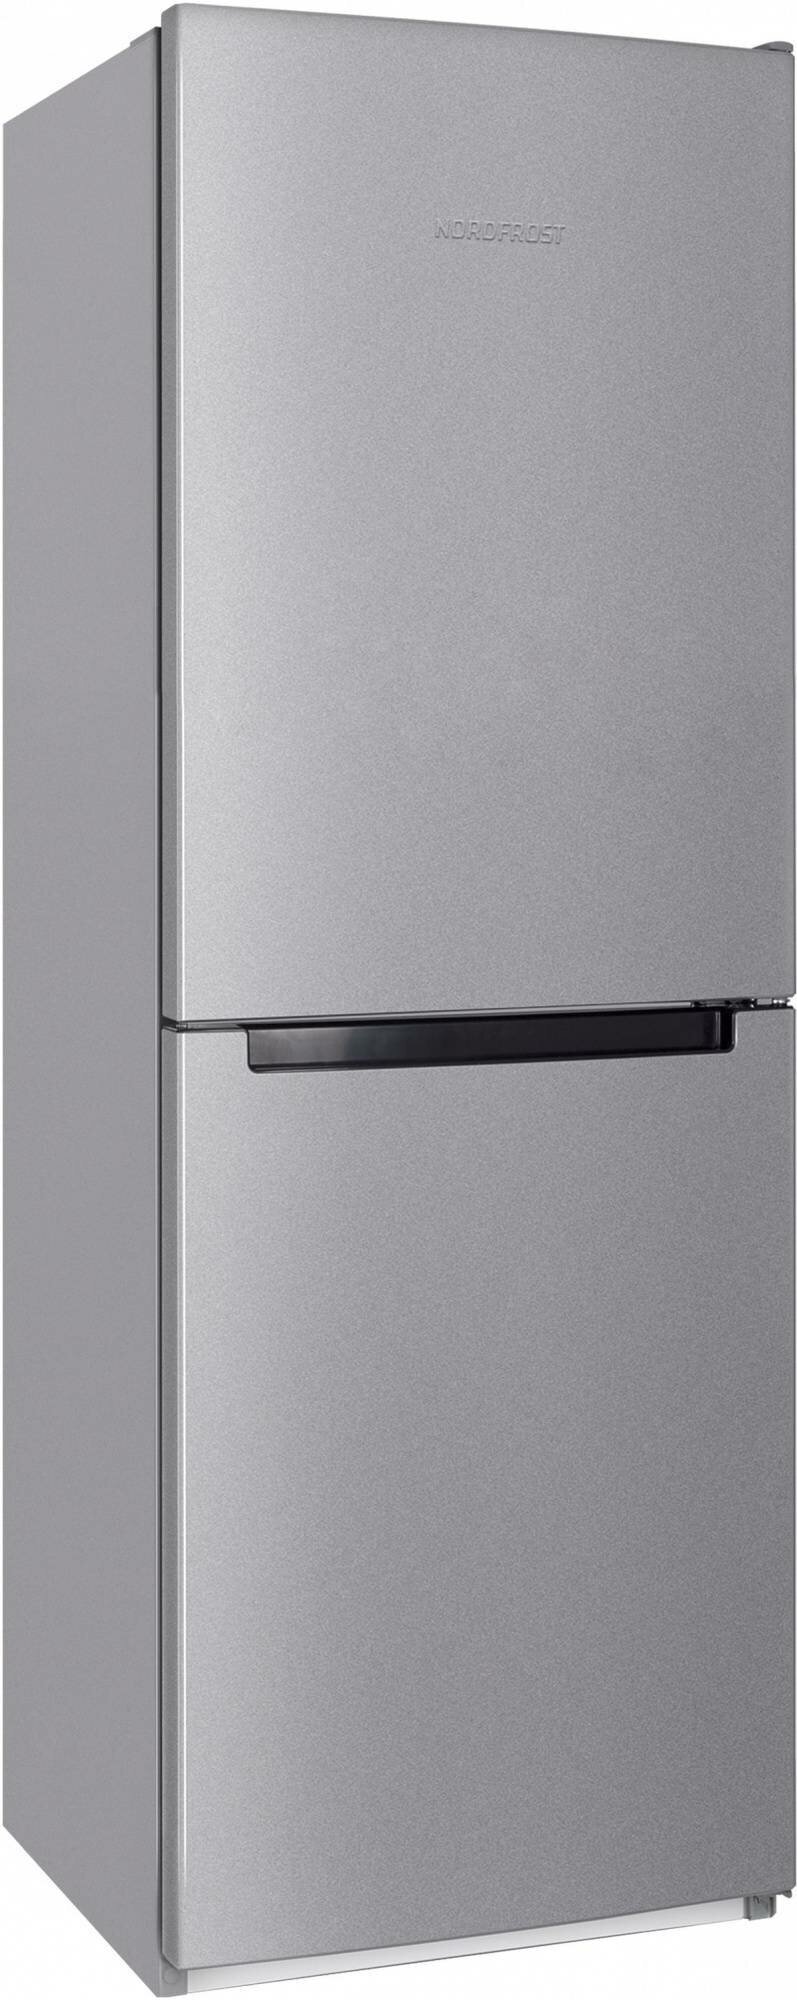 Холодильник NORDFROST NRB 151 I двухкамерный, 285 л объем, 172 см высота, серебристый металлик - фотография № 14